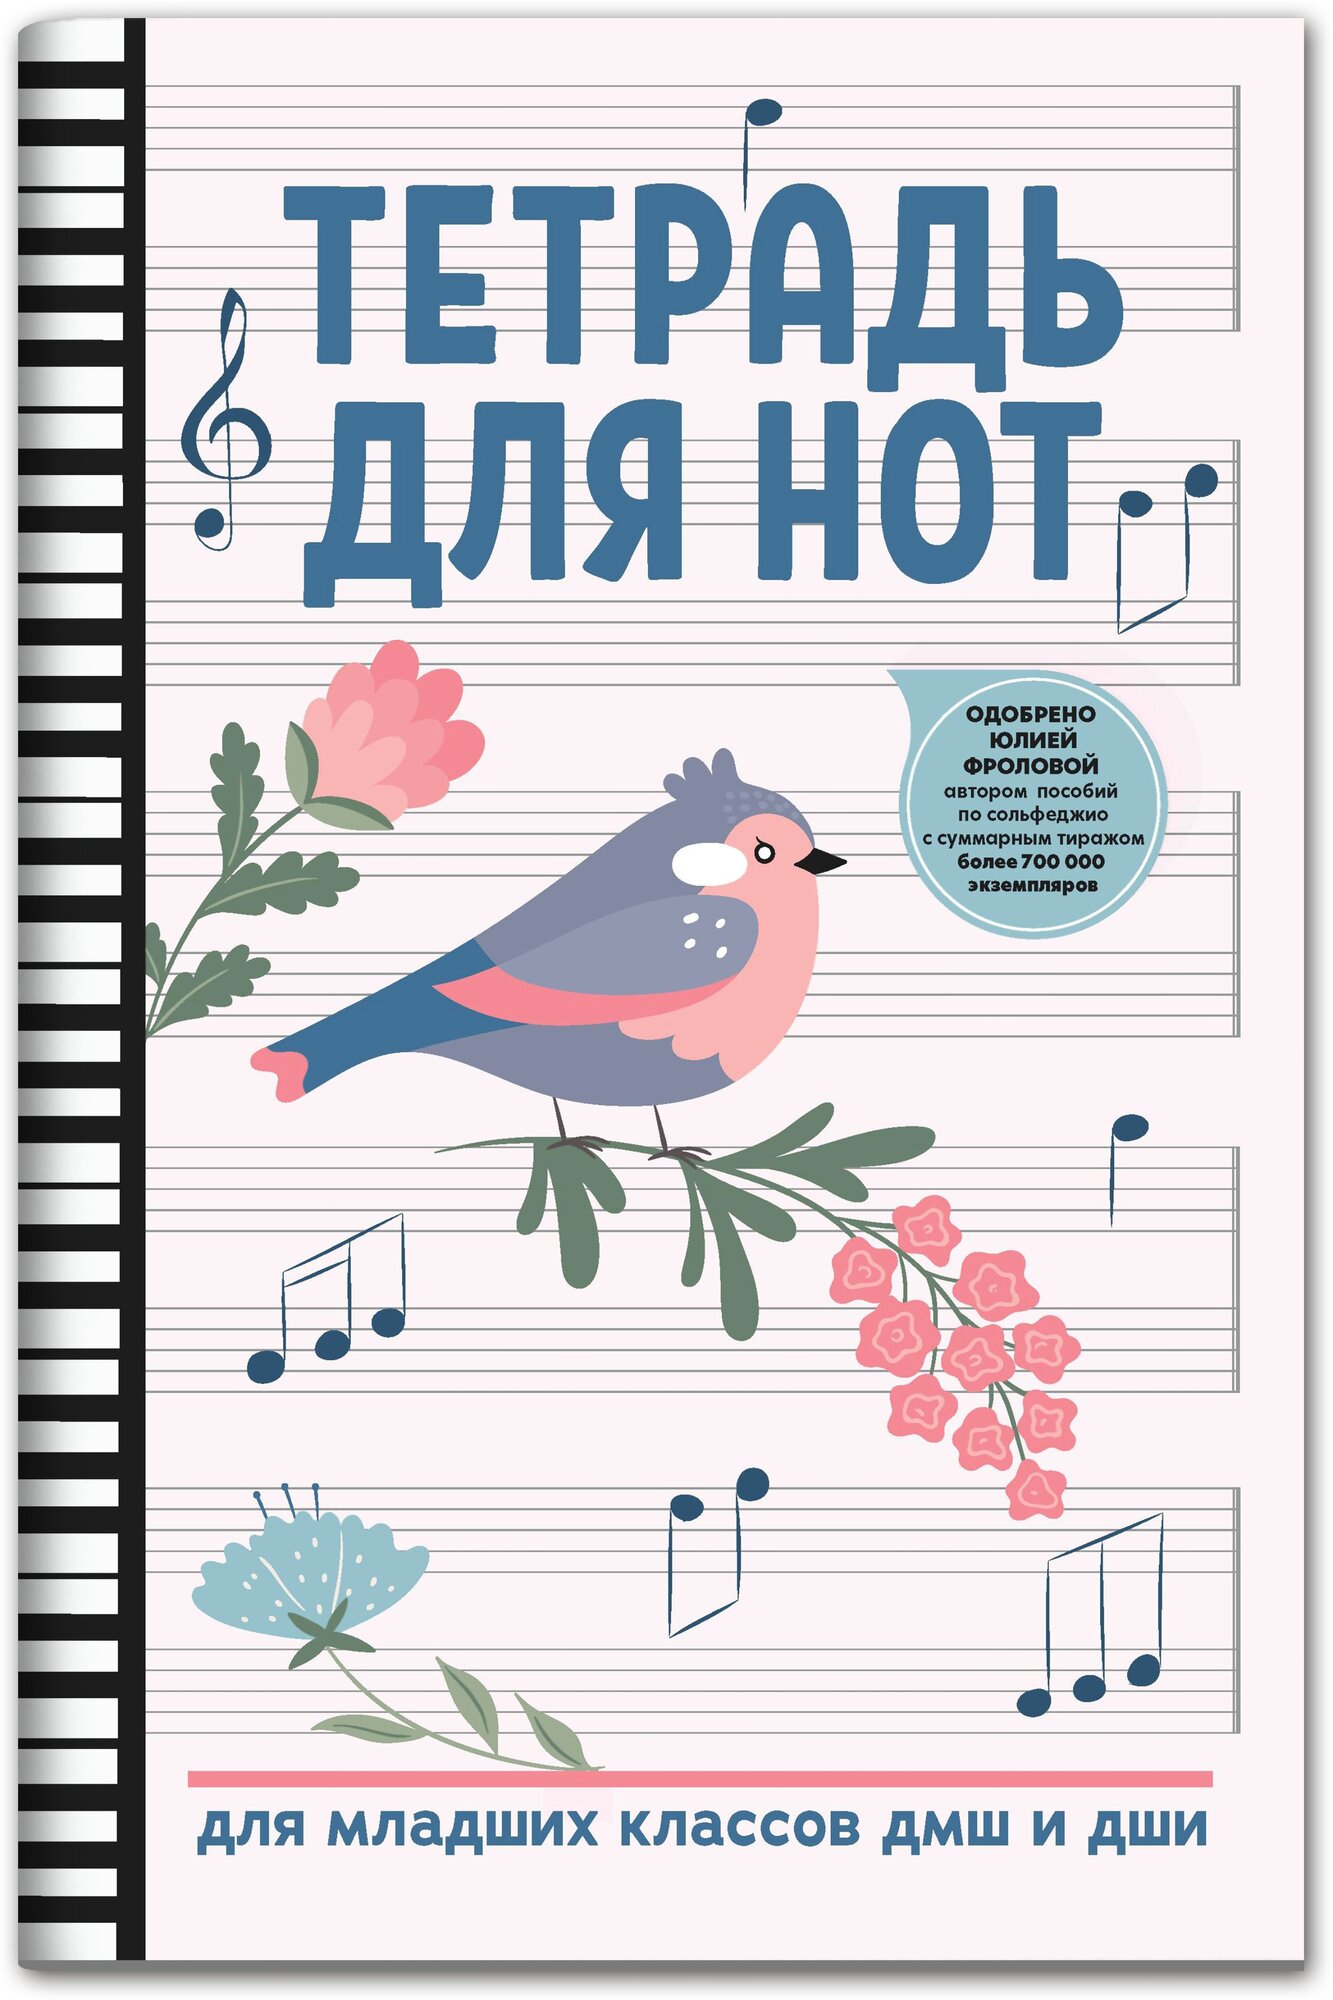 Тетрадь для нот для младших классов ДМШ и ДШИ, (птица, белый цвет), издательство "Феникс"